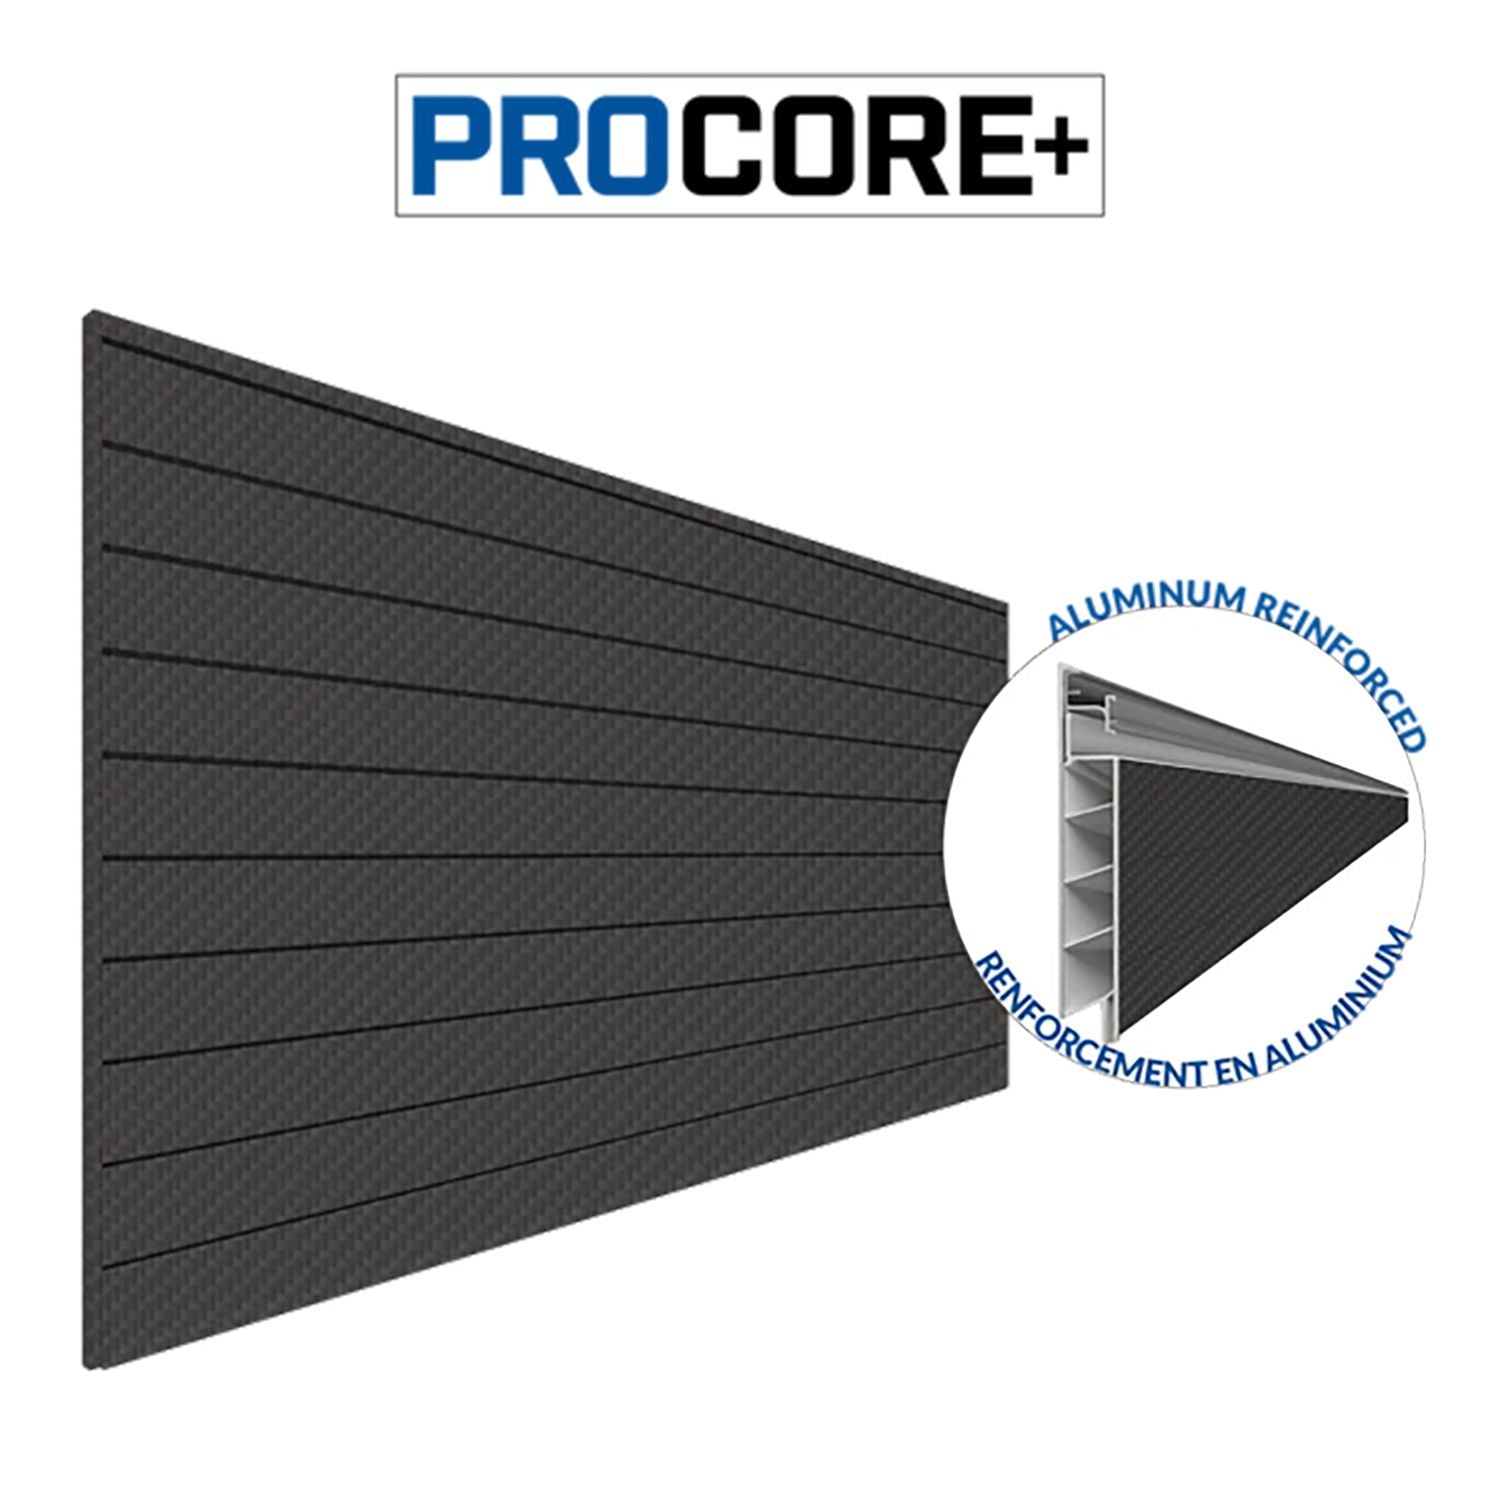 Proslat 87775 - PROCORE+ PVC Slatwall 4' x 8', Carbon Fiber Finish Black